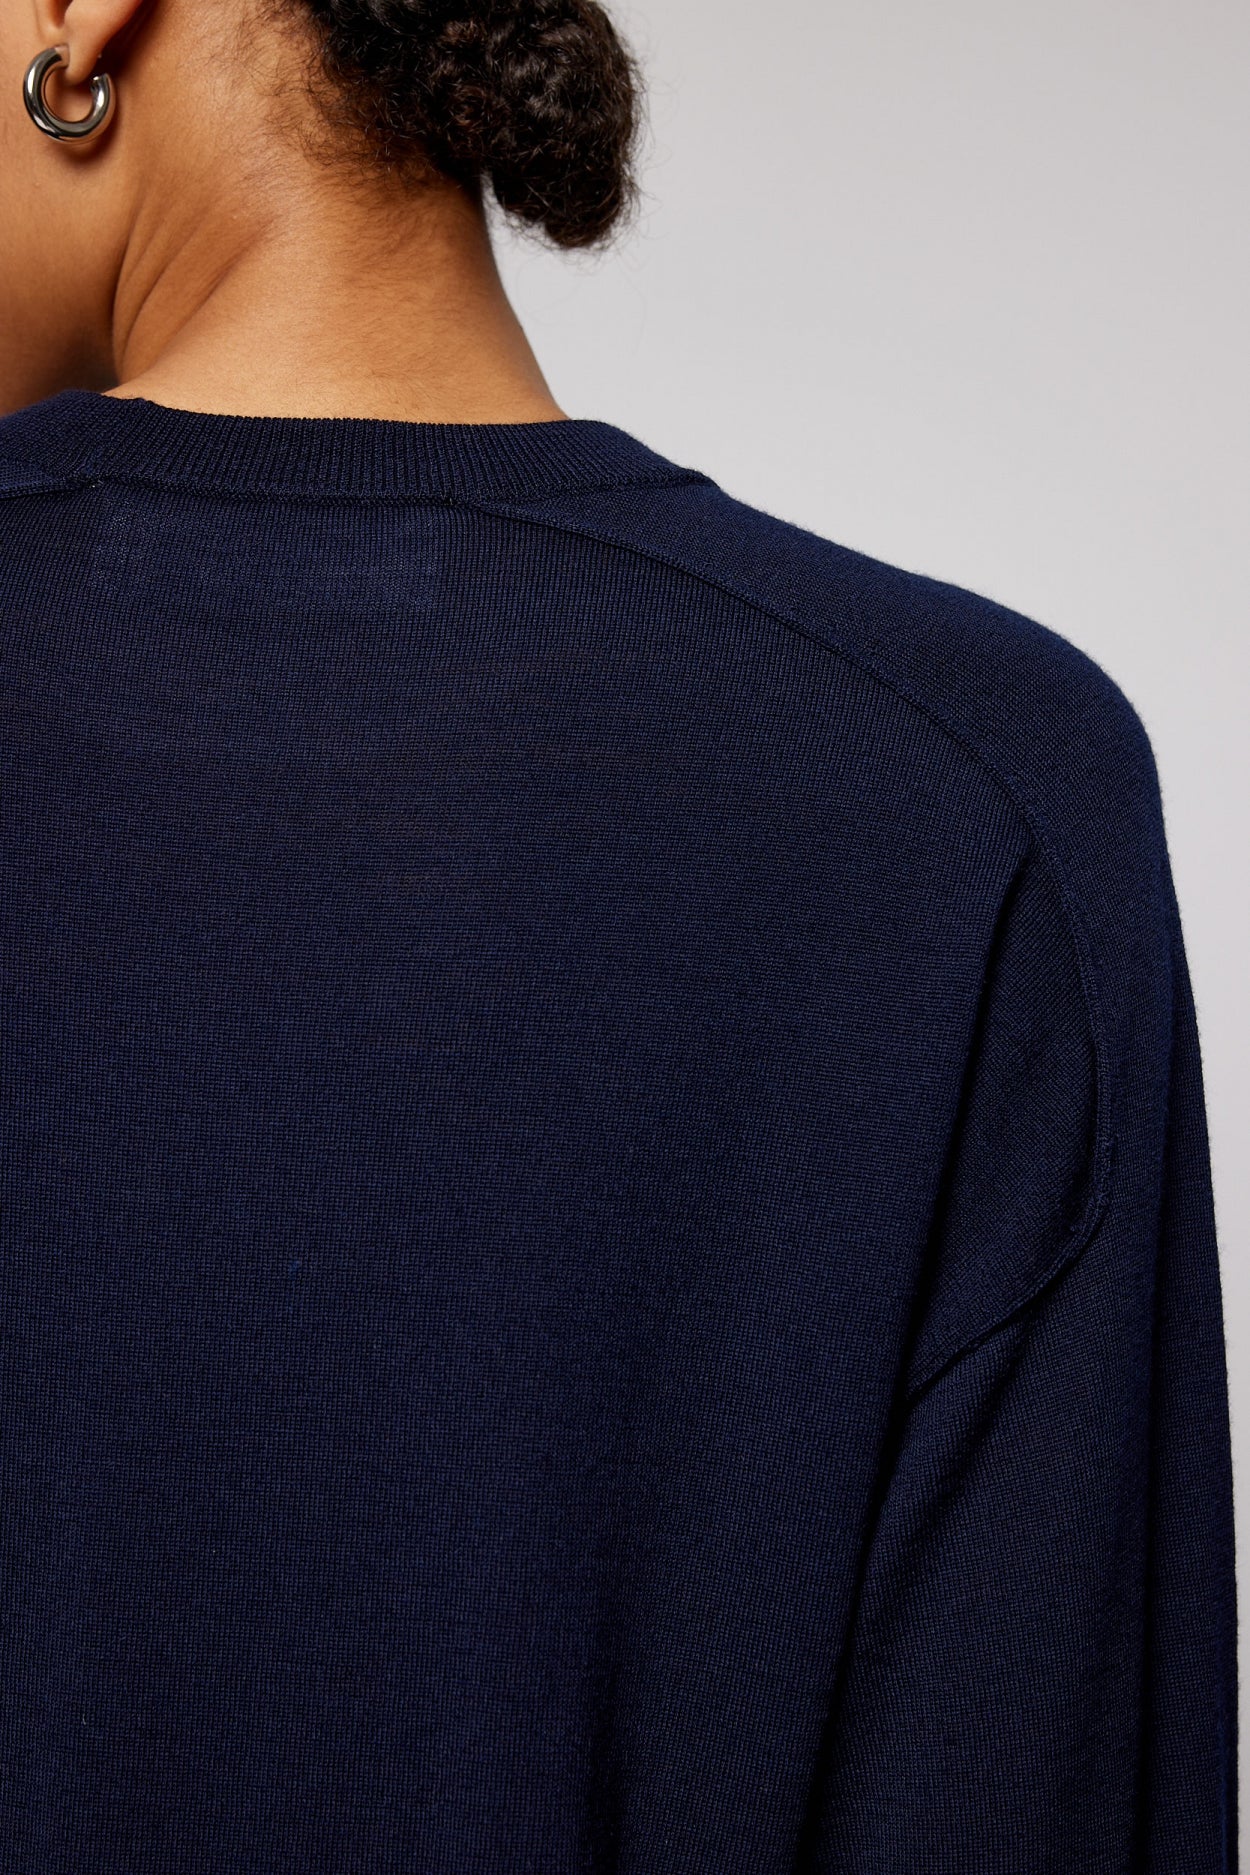 KORY pullover | DARK BLUE